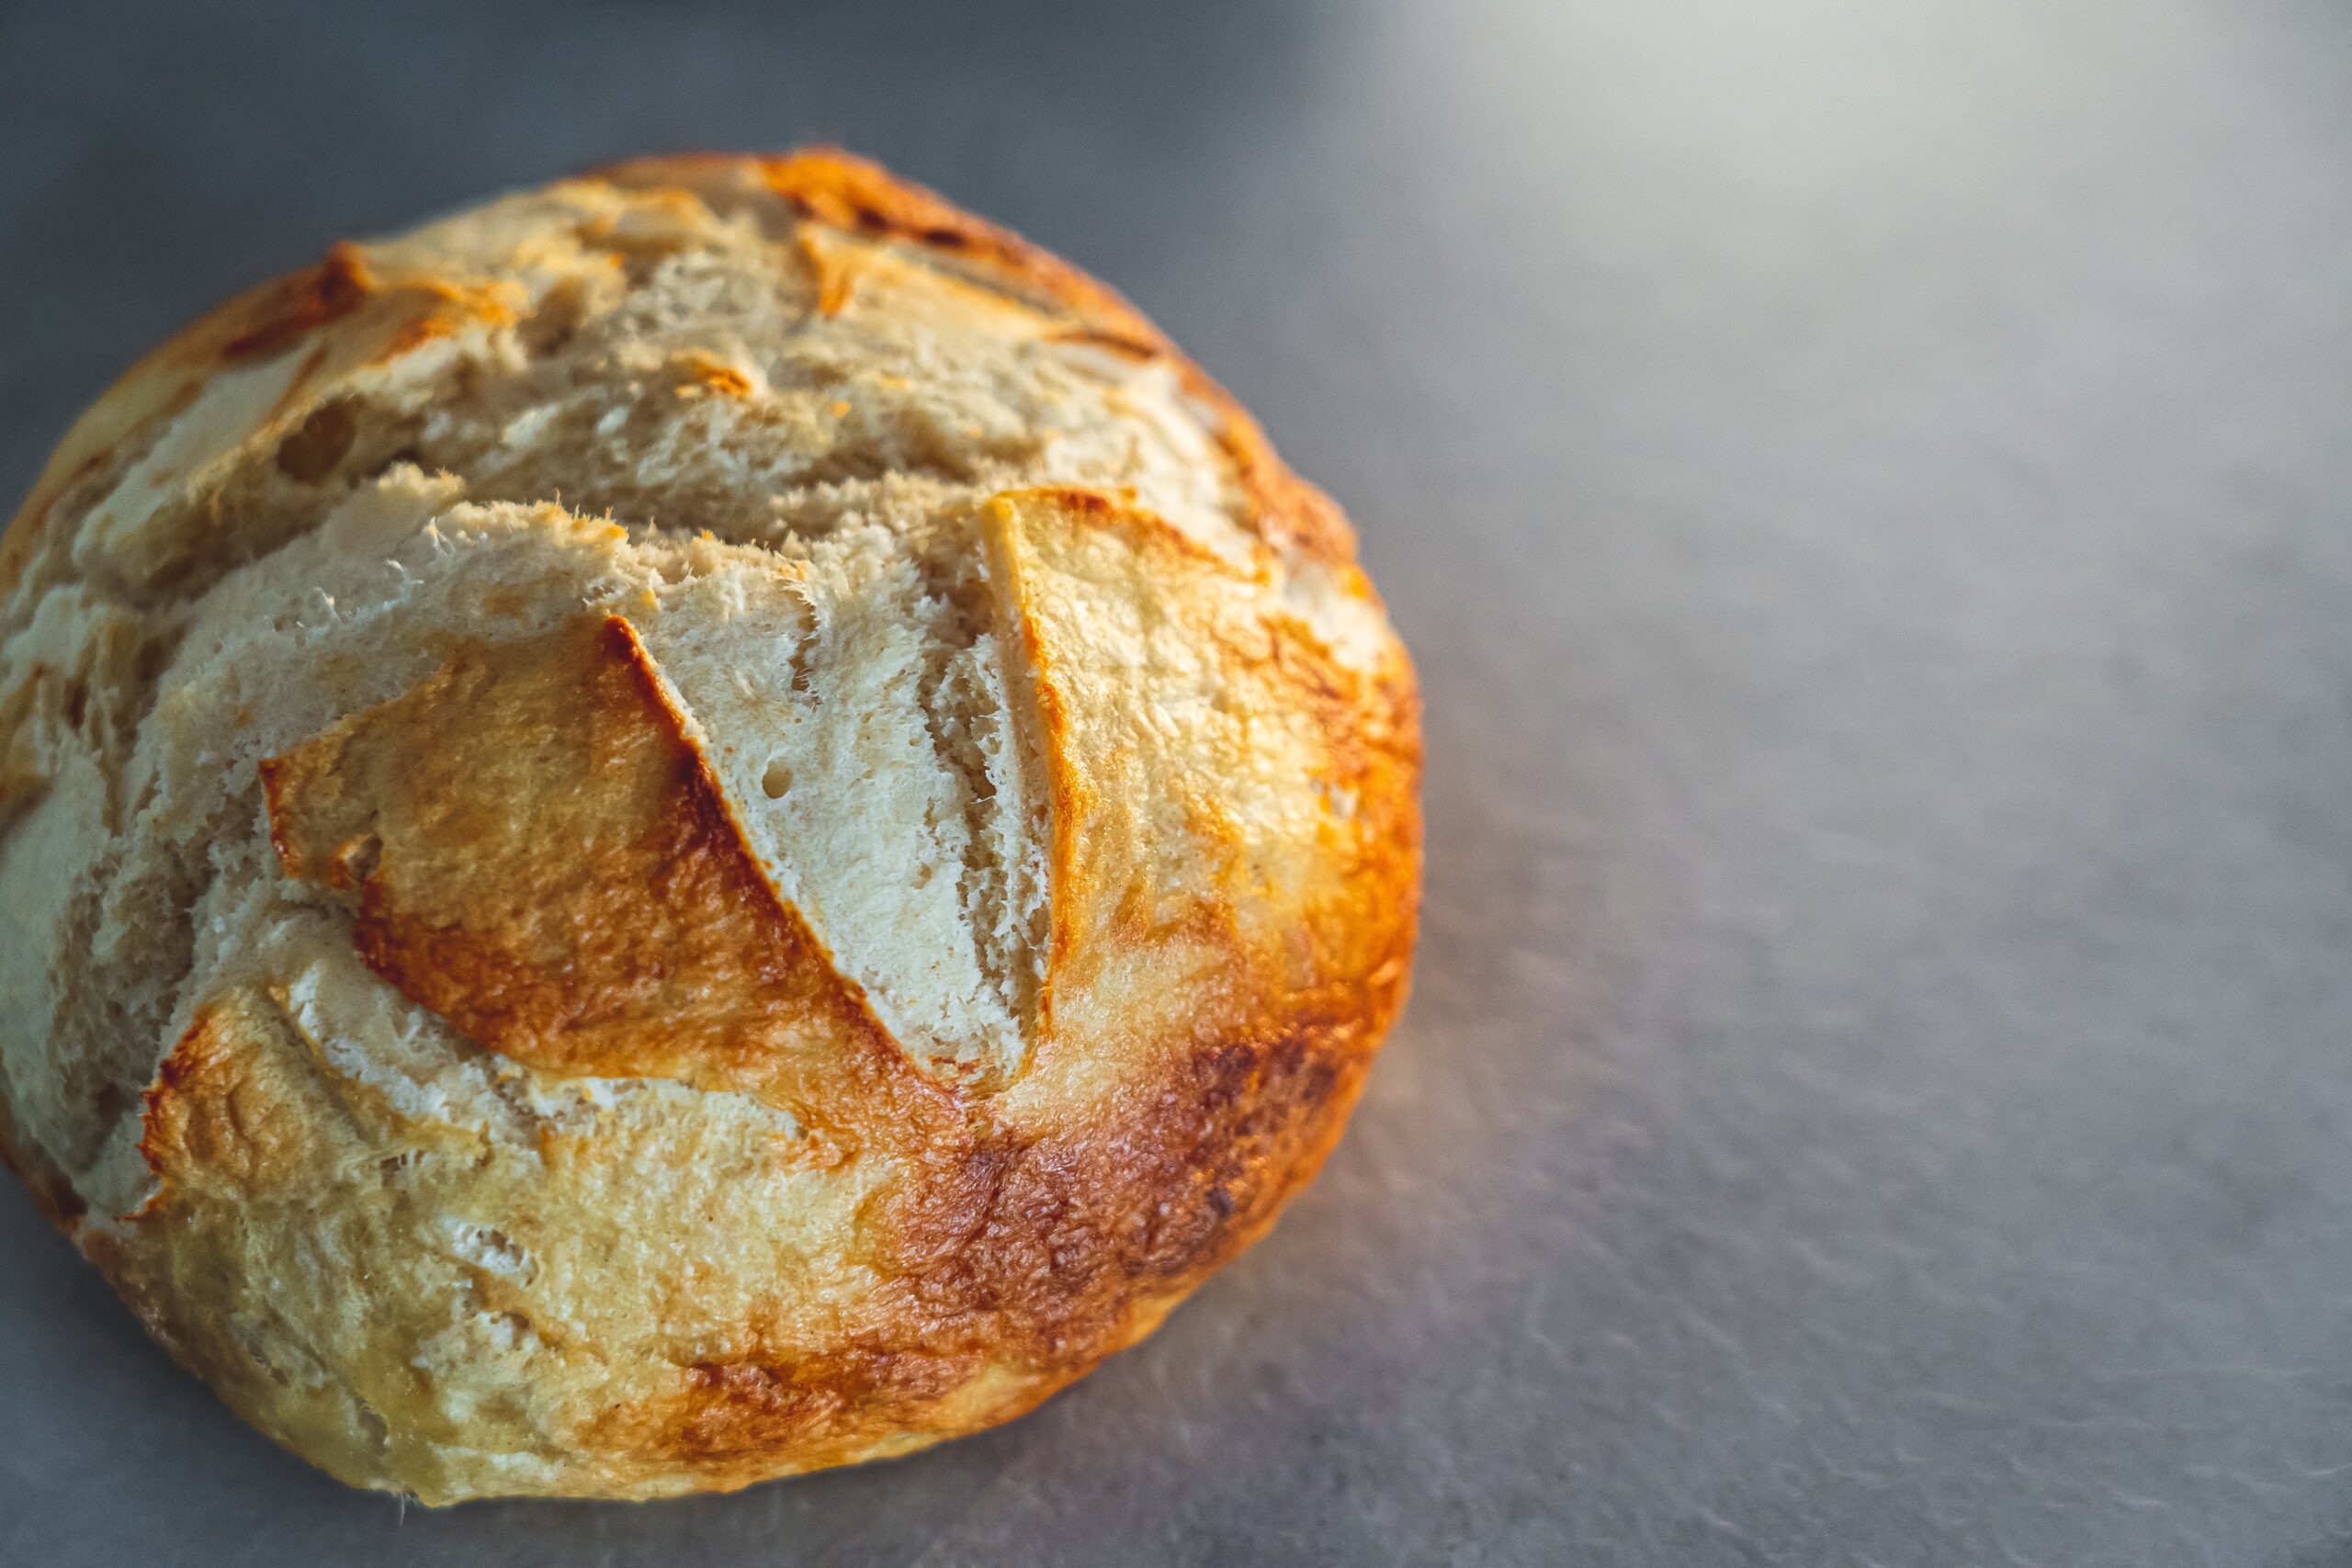 ekmek yemek kilo aldırır mı